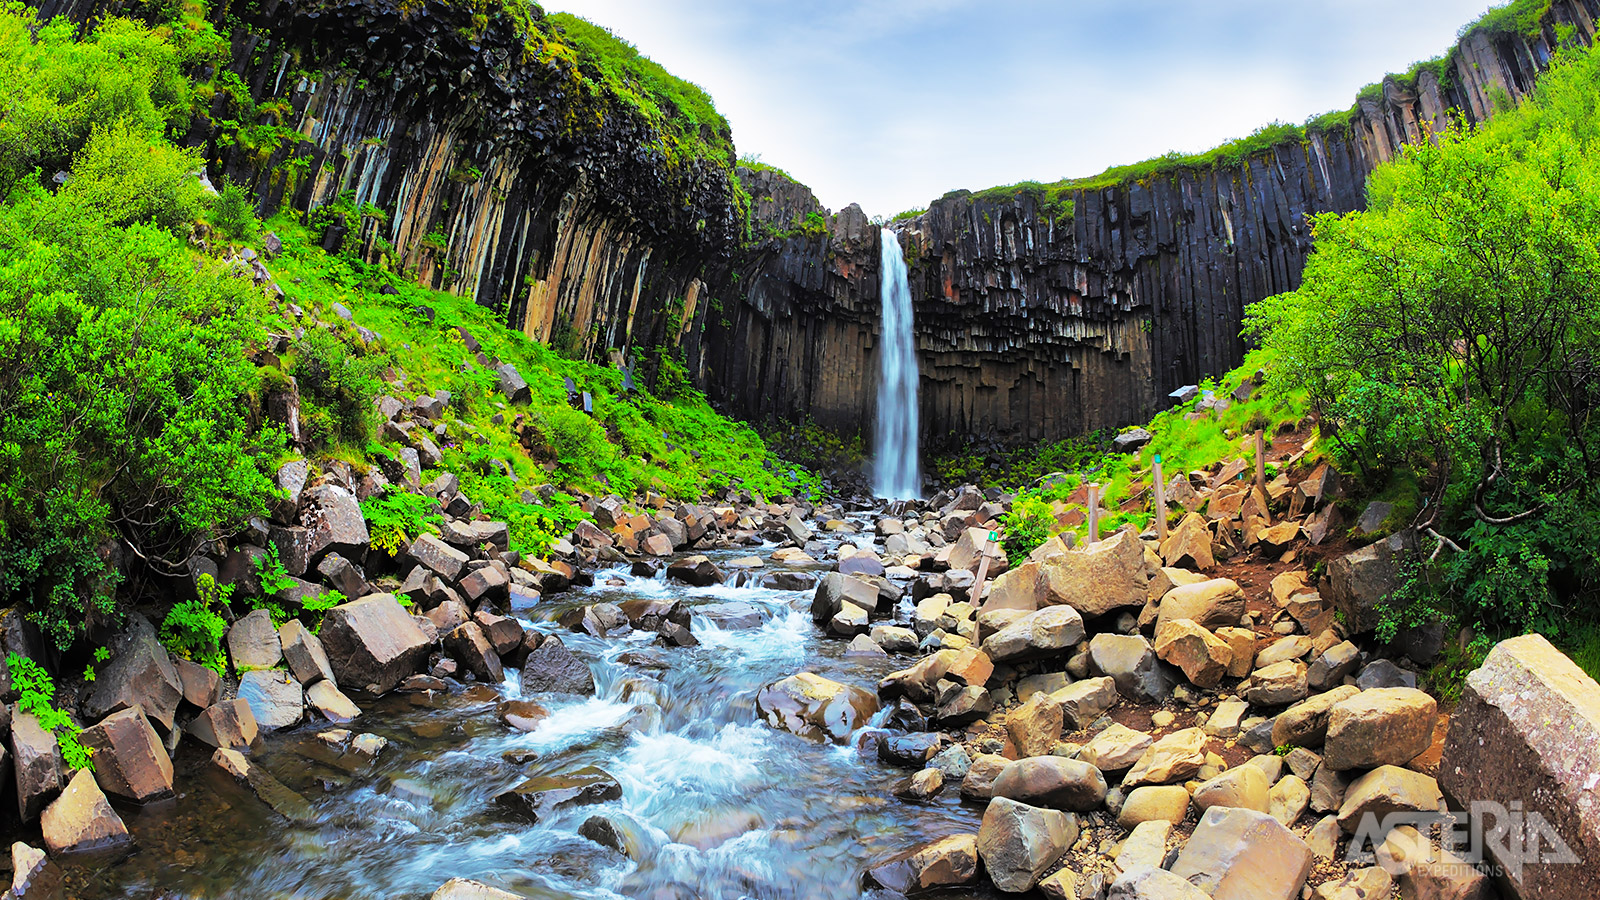 De Svartifoss waterval behoort tot de mooiste watervallen in IJsland door de imposante basaltblokken rond de waterval